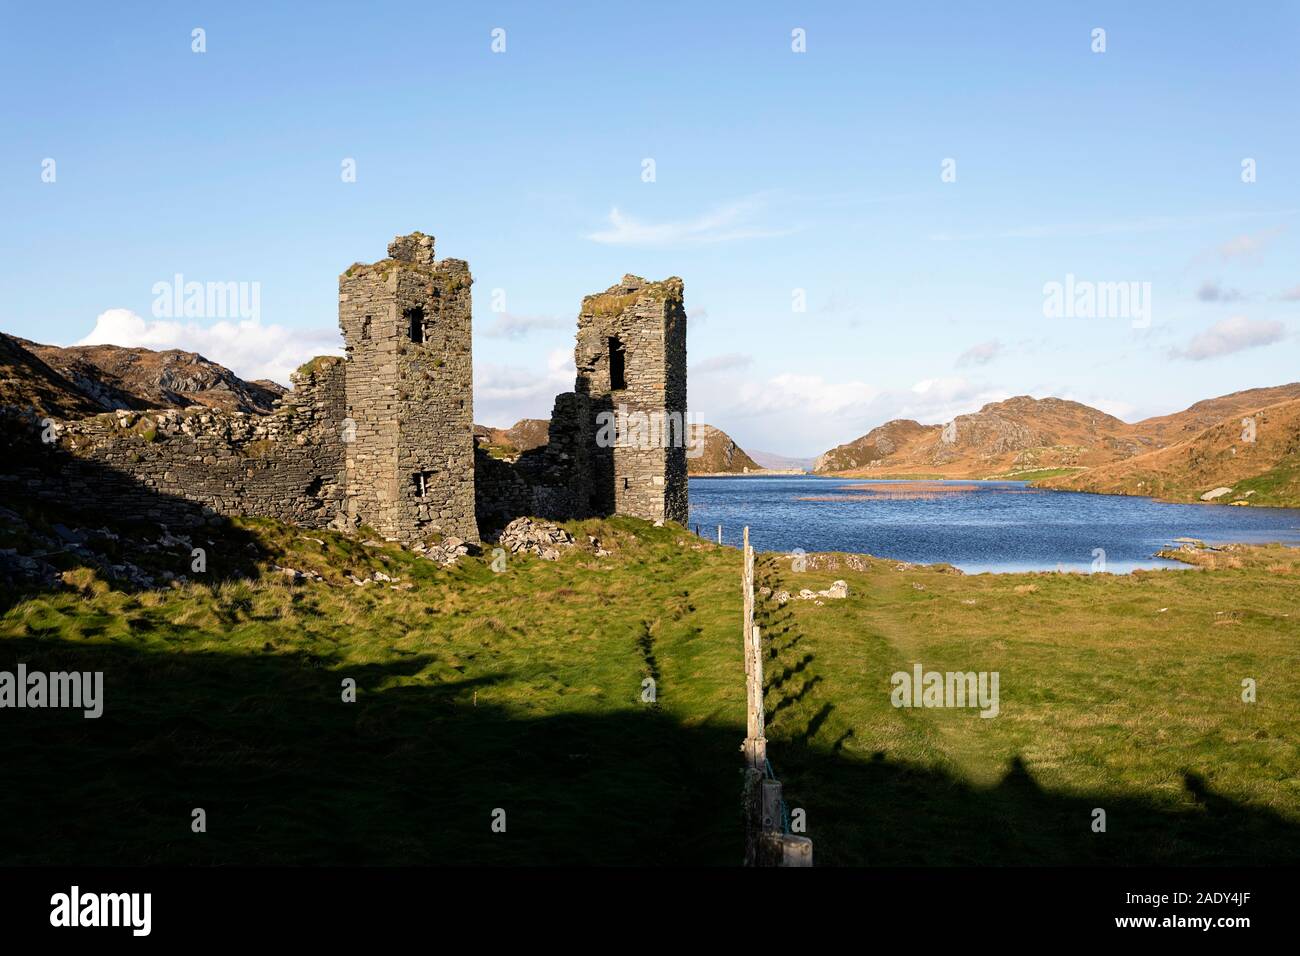 Excursiones a las ruinas del castillo, el espectáculo escénico de Dunlough Castillo, Castillo de tres cabezas, la Península de Mizen Head, West Cork, Irlanda, Foto de stock